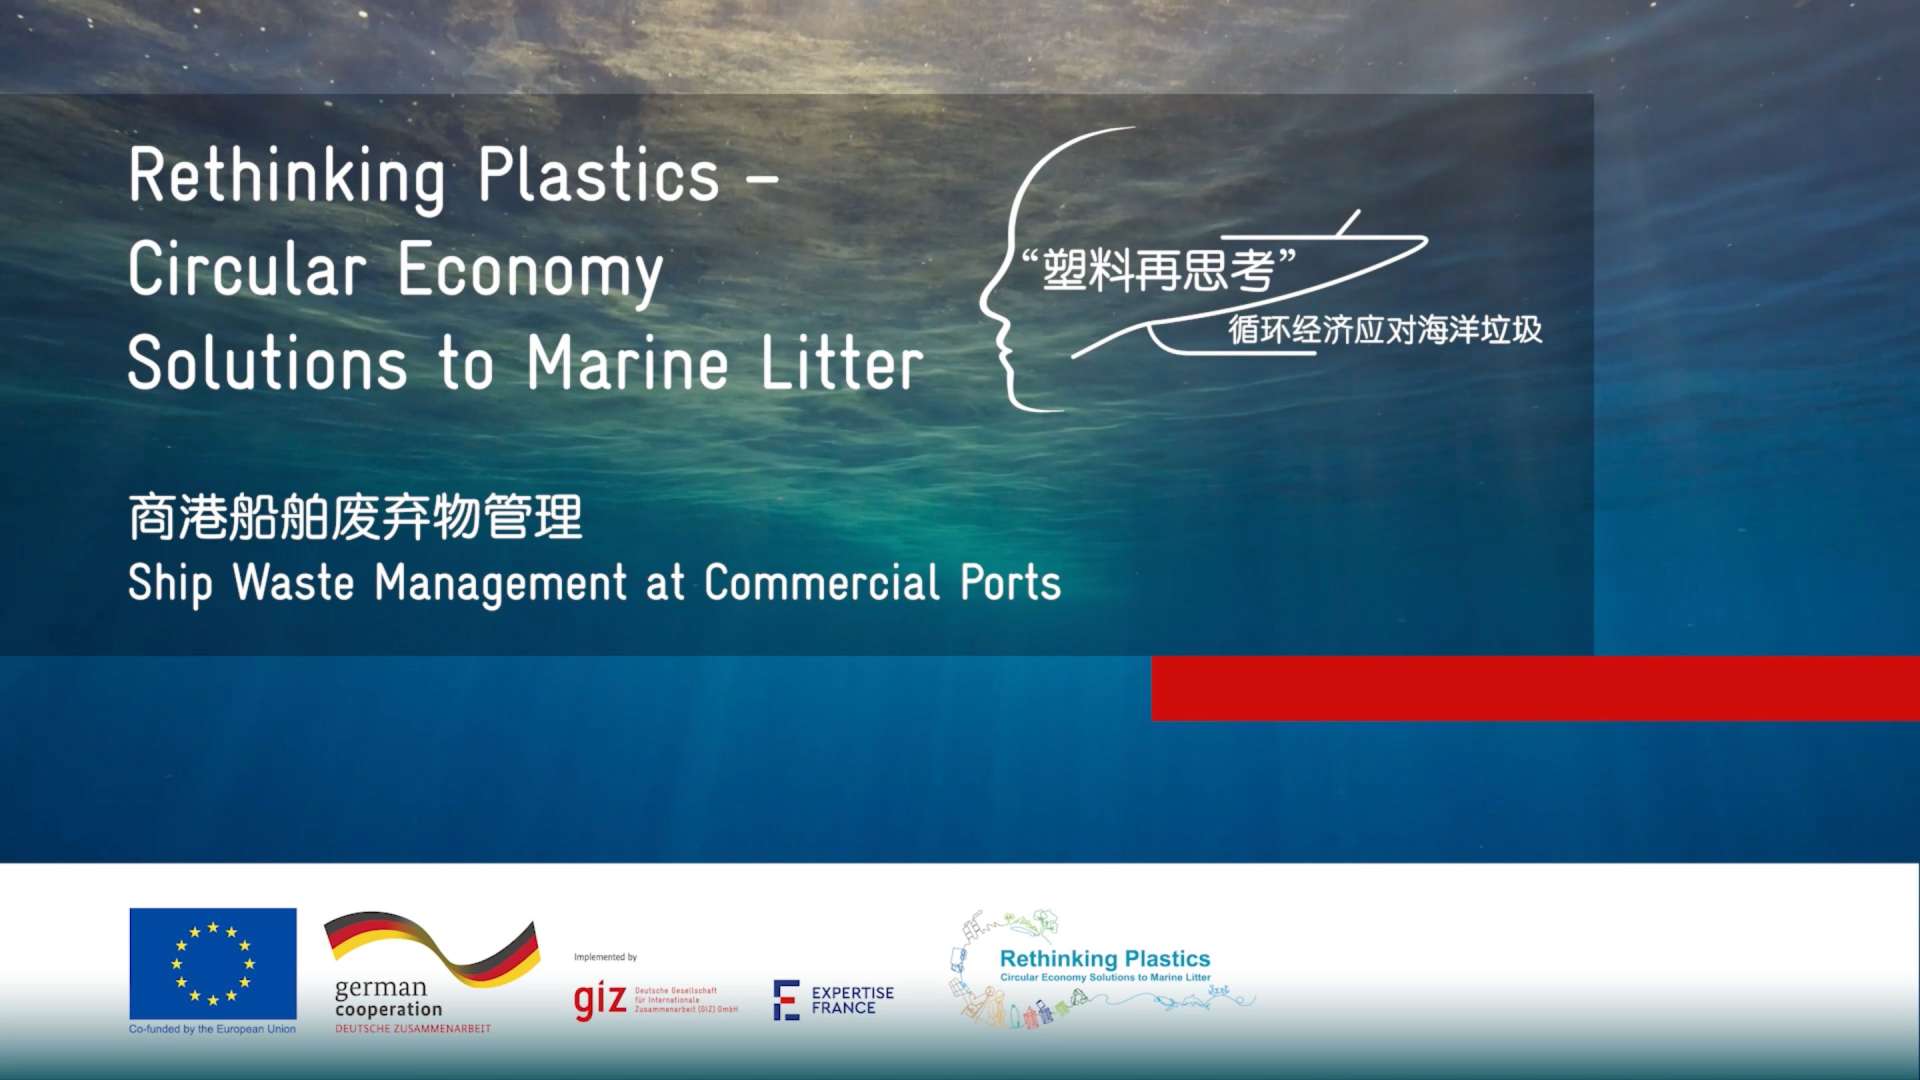 “塑料再思考”---商港船舶废弃物管理（天津港/上海港）